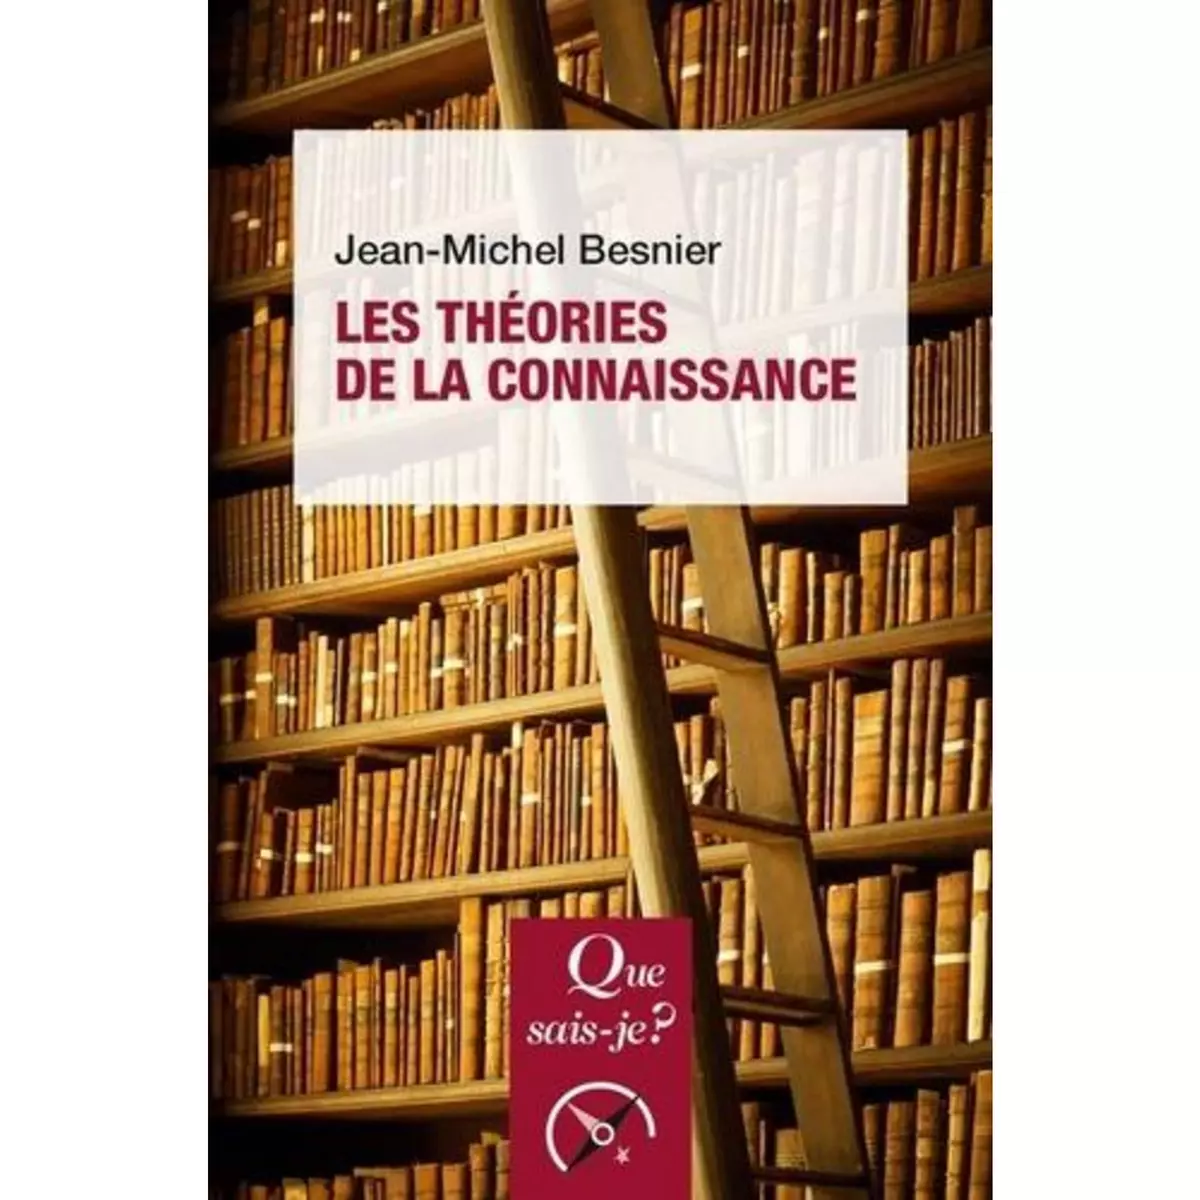  LES THEORIES DE LA CONNAISSANCE. 5E EDITION, Besnier Jean-Michel